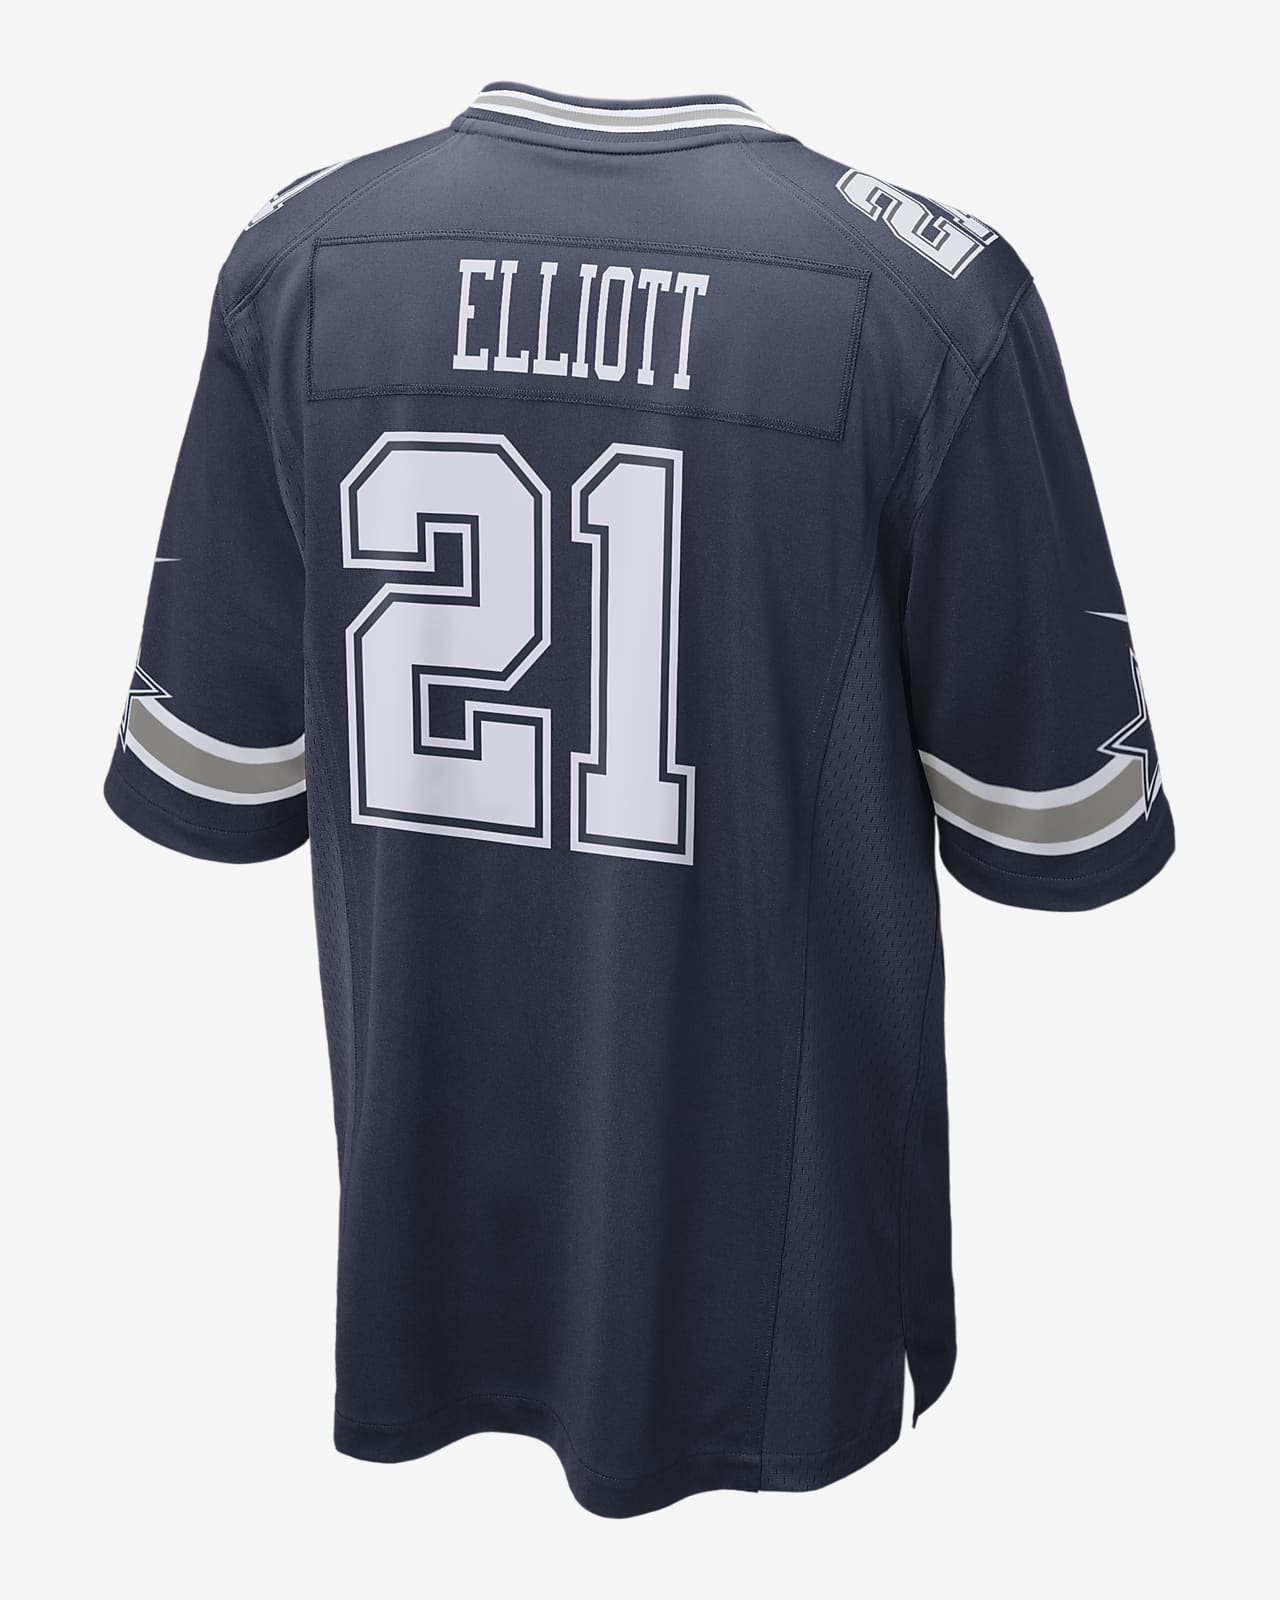 NFL Dallas Cowboys (Ezekiel Elliott) Men's Game Football Jersey